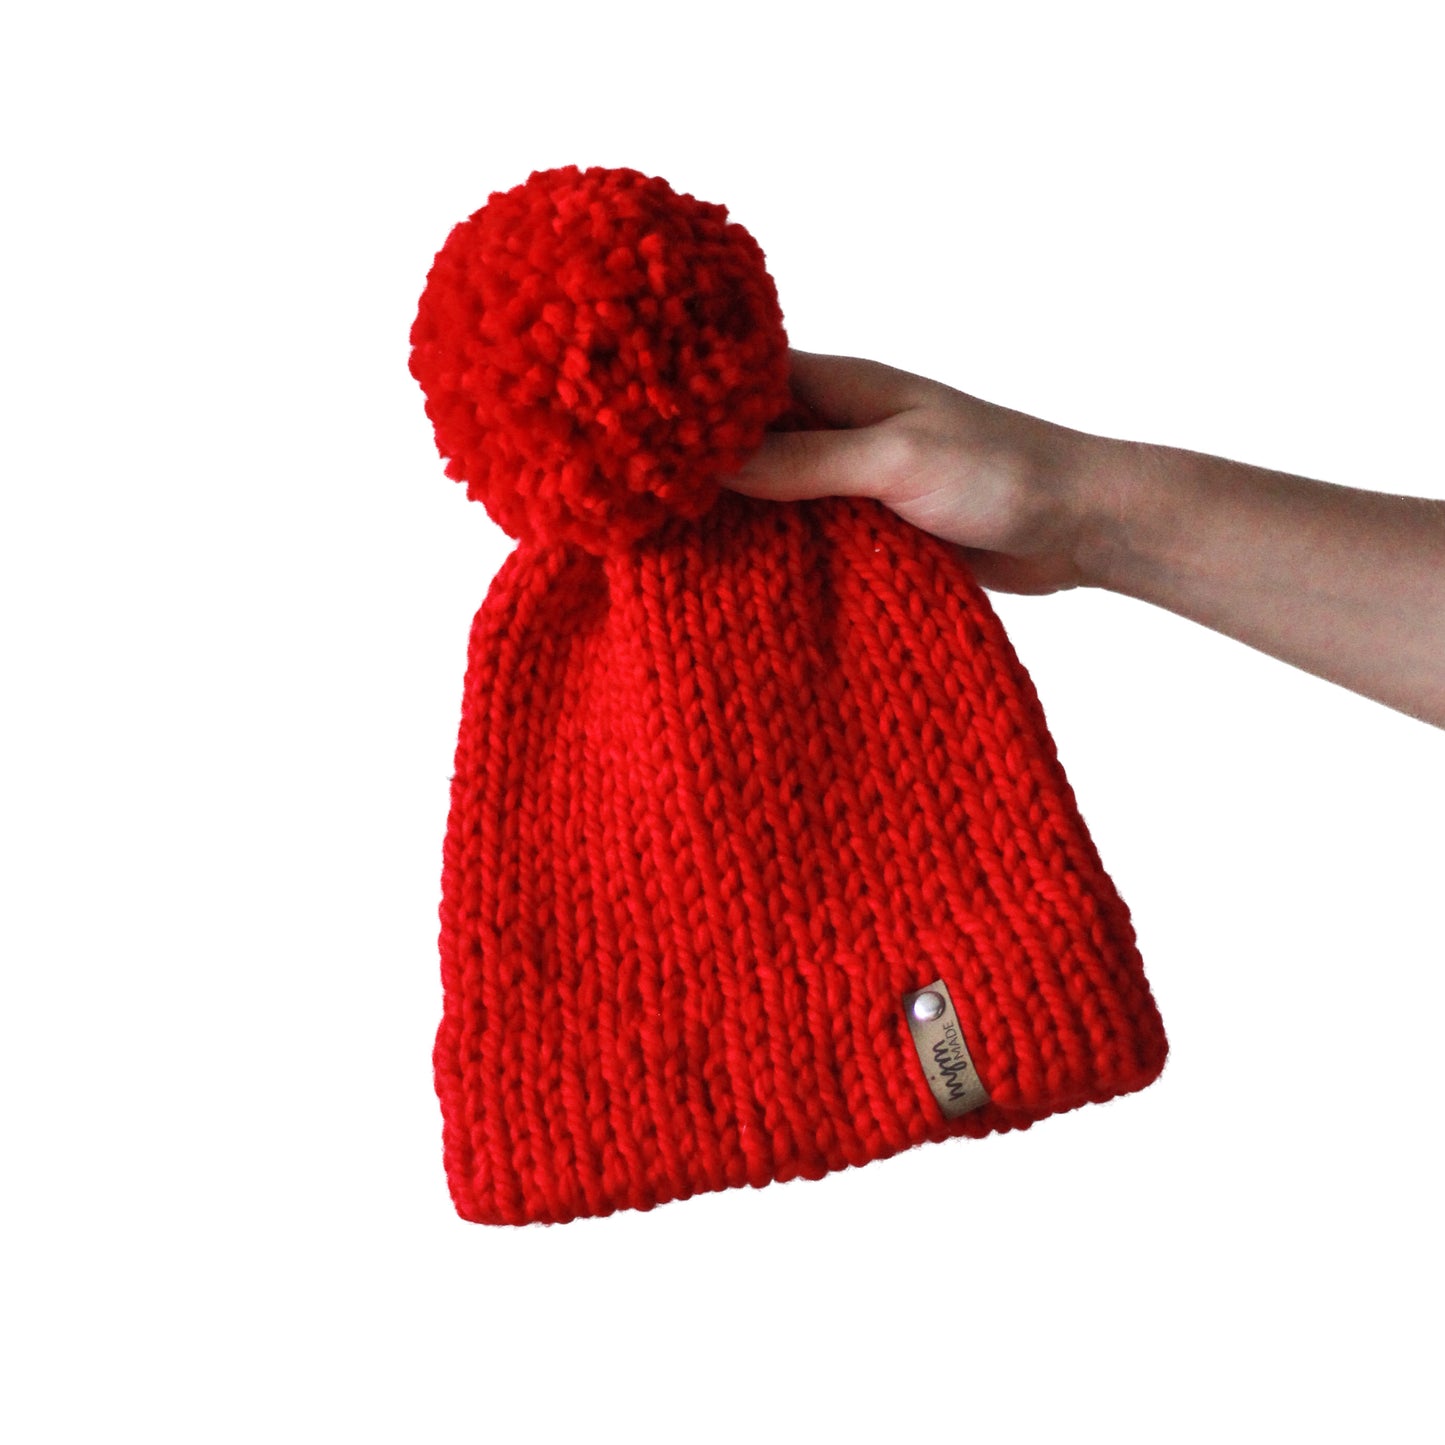 Bulky Hand Knit Pom Beanie - Bright Red